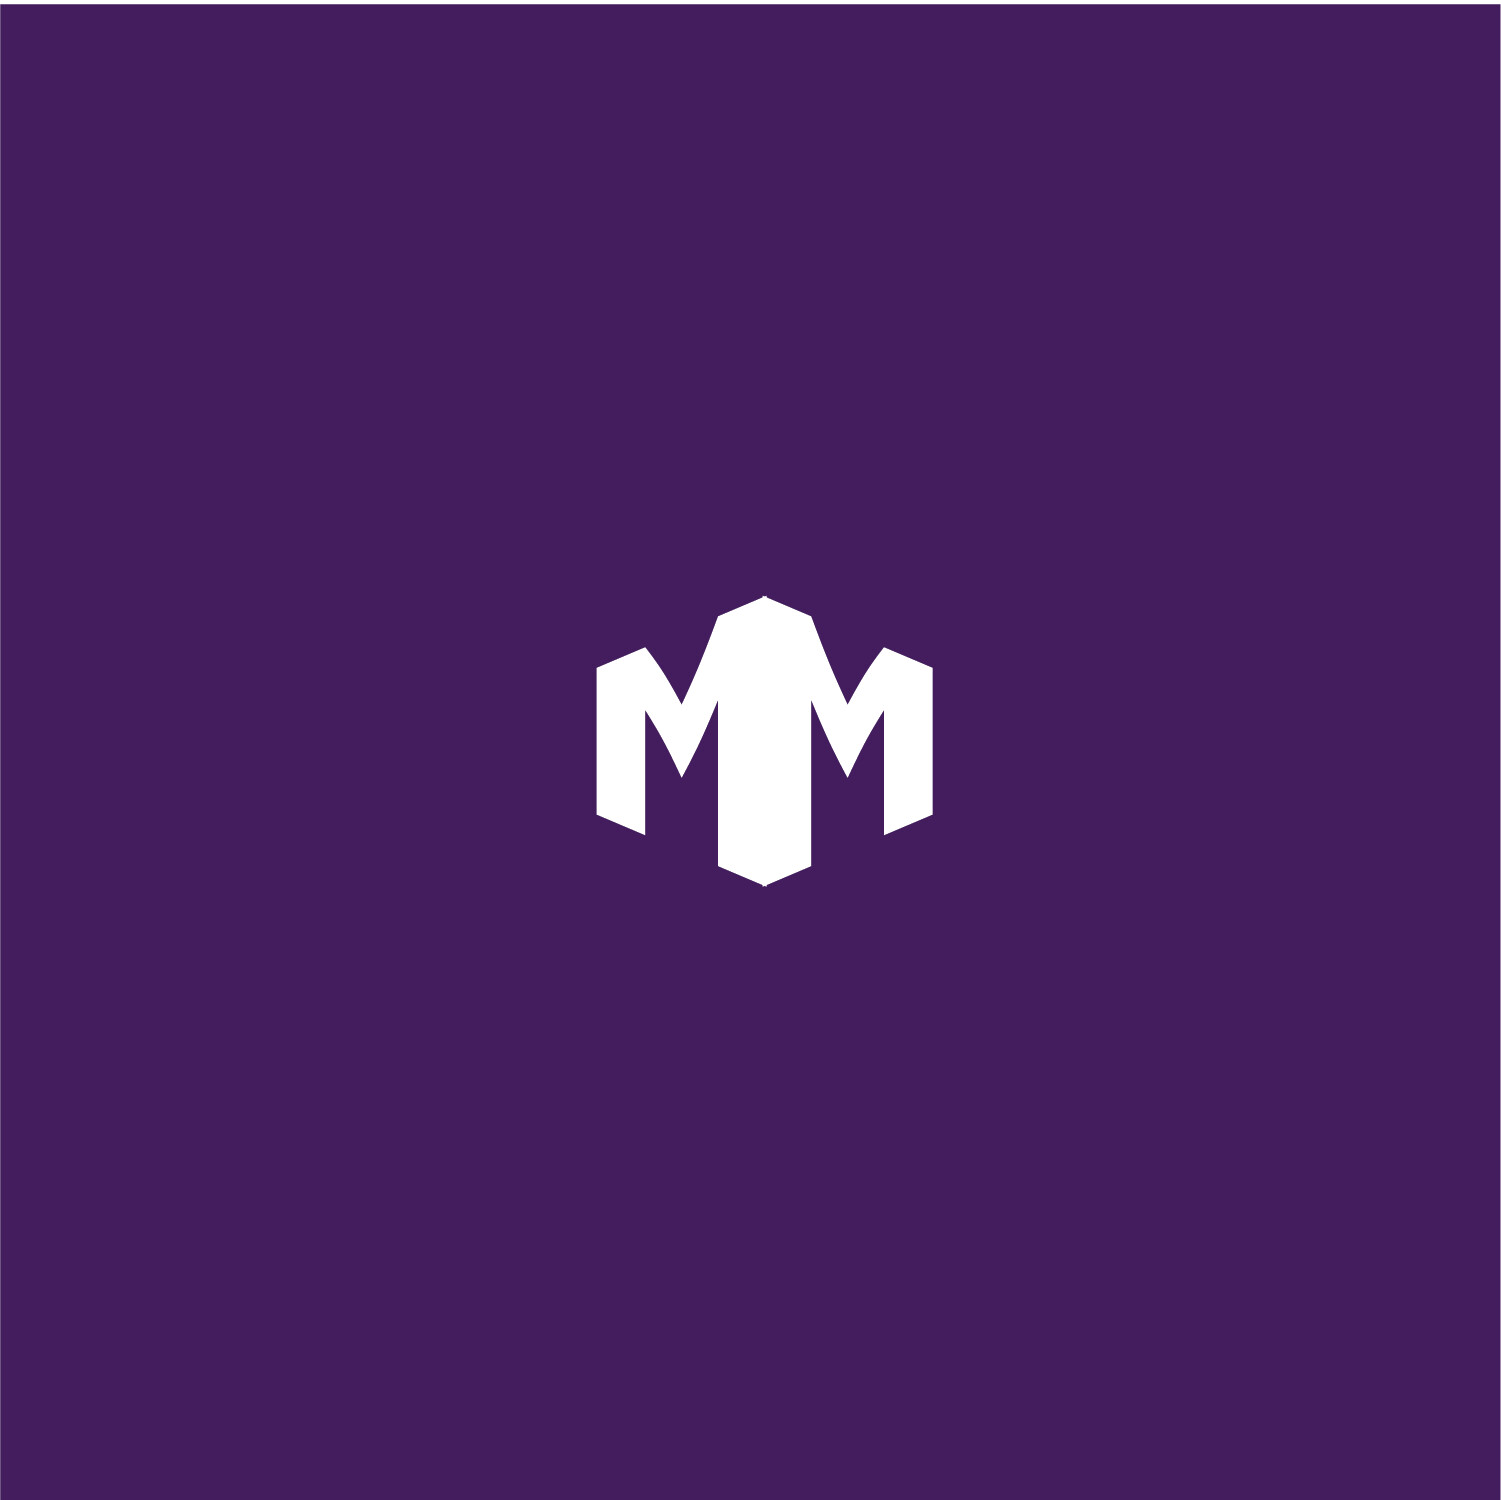 TP Graphics - Double M logo concept